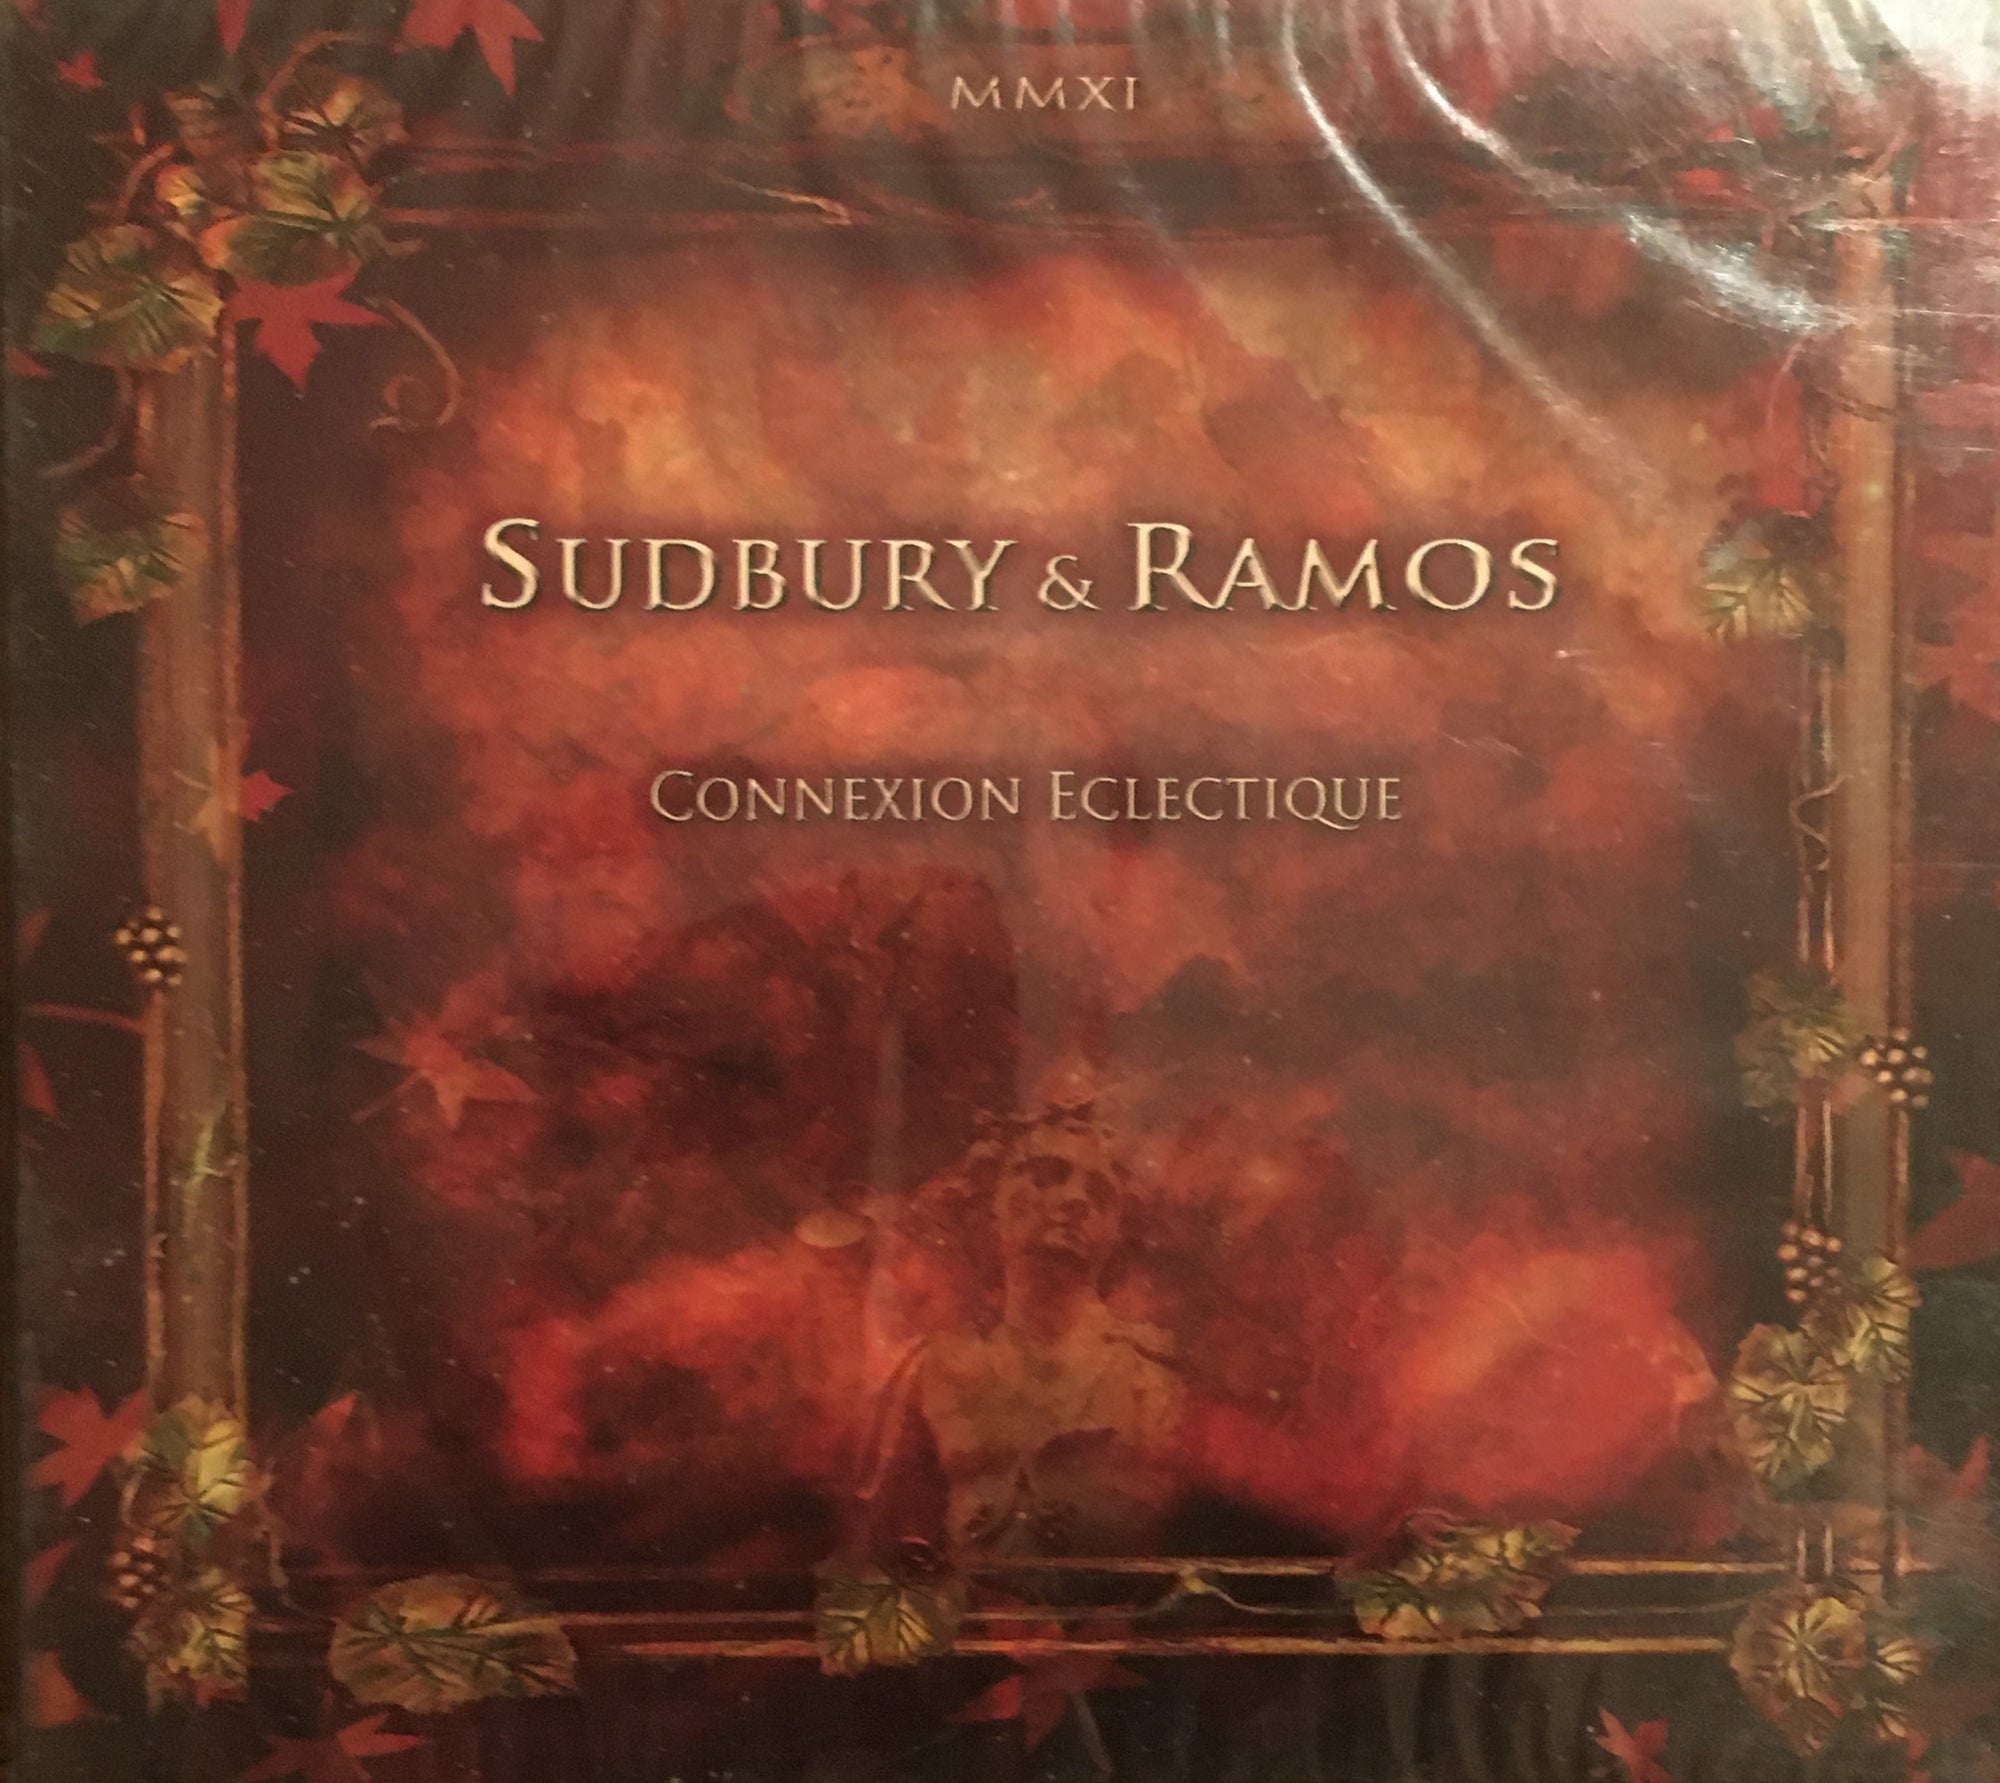 CD Connexion Eclectique by Sudbury & Ramos